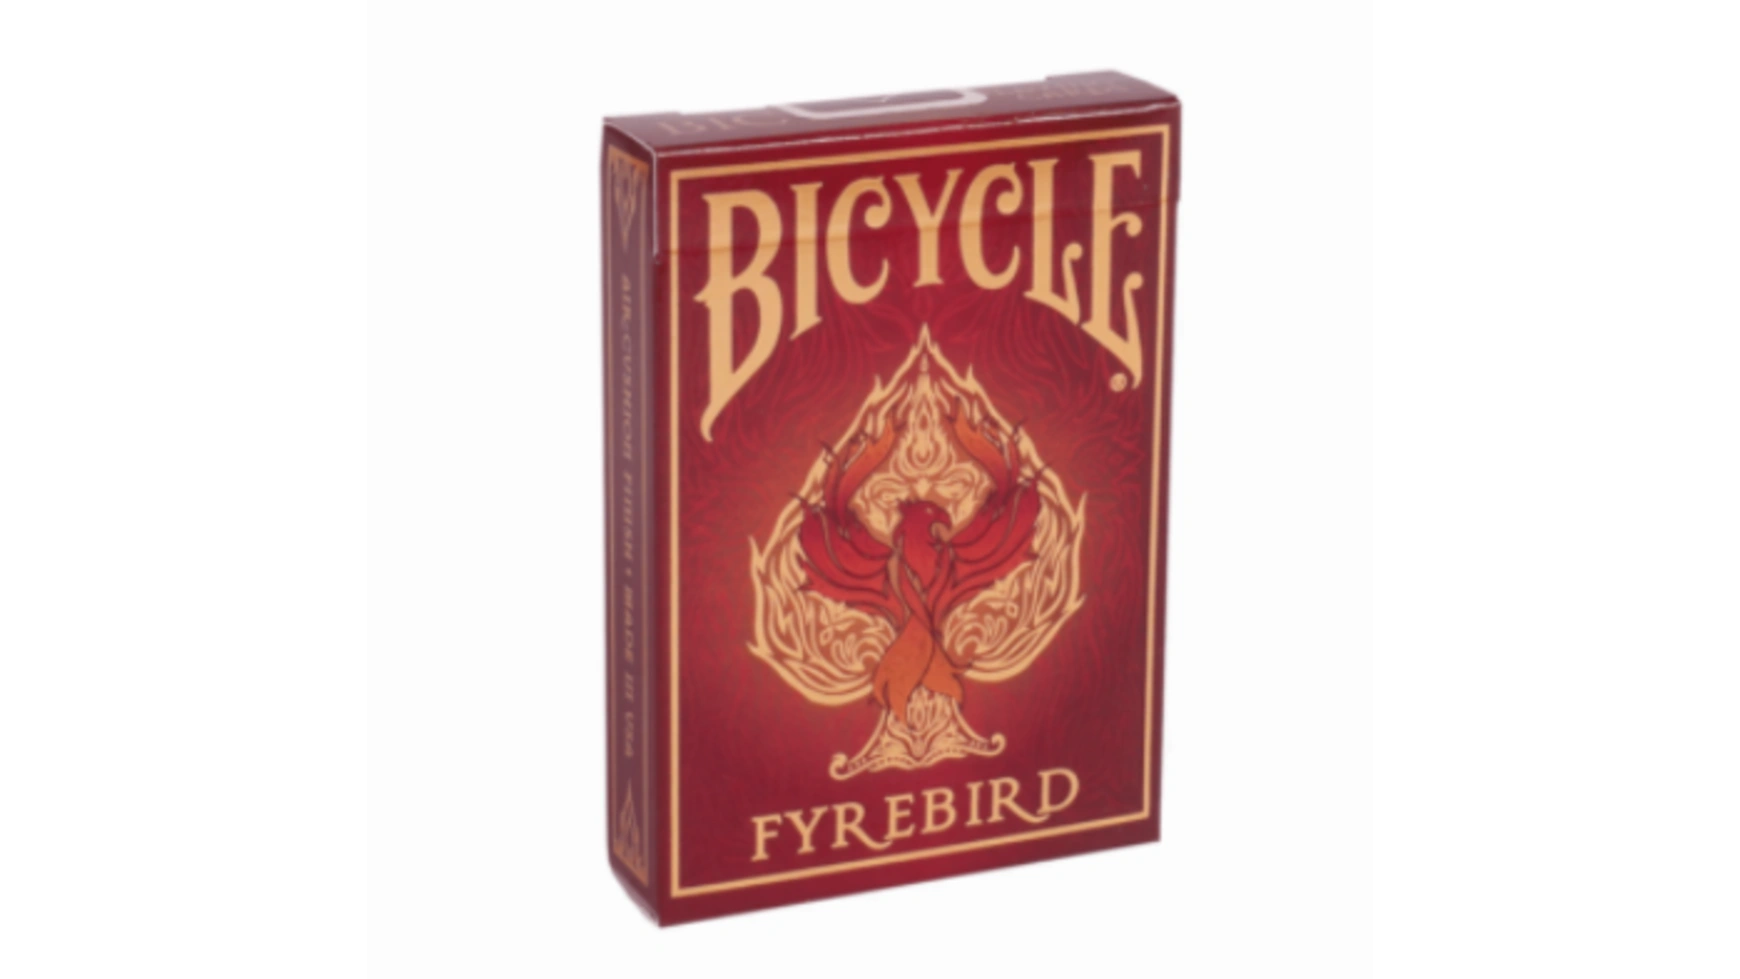 Bicycle игральные карты Fyrebird игральные карты bicycle standard красные